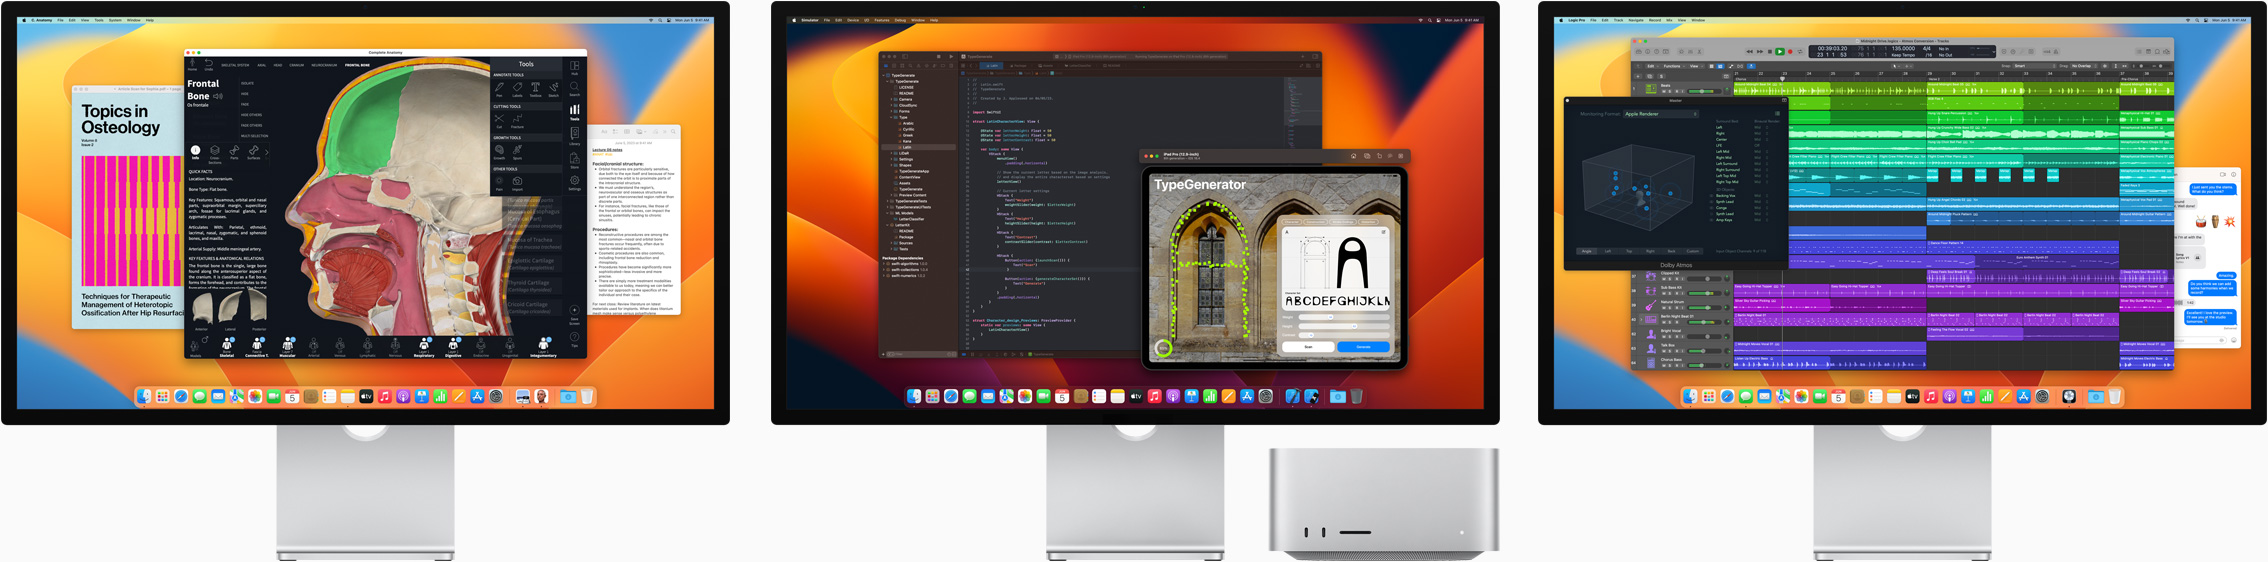 Mac Studio e três monitores Studio Display, cada um com um app diferente na tela.